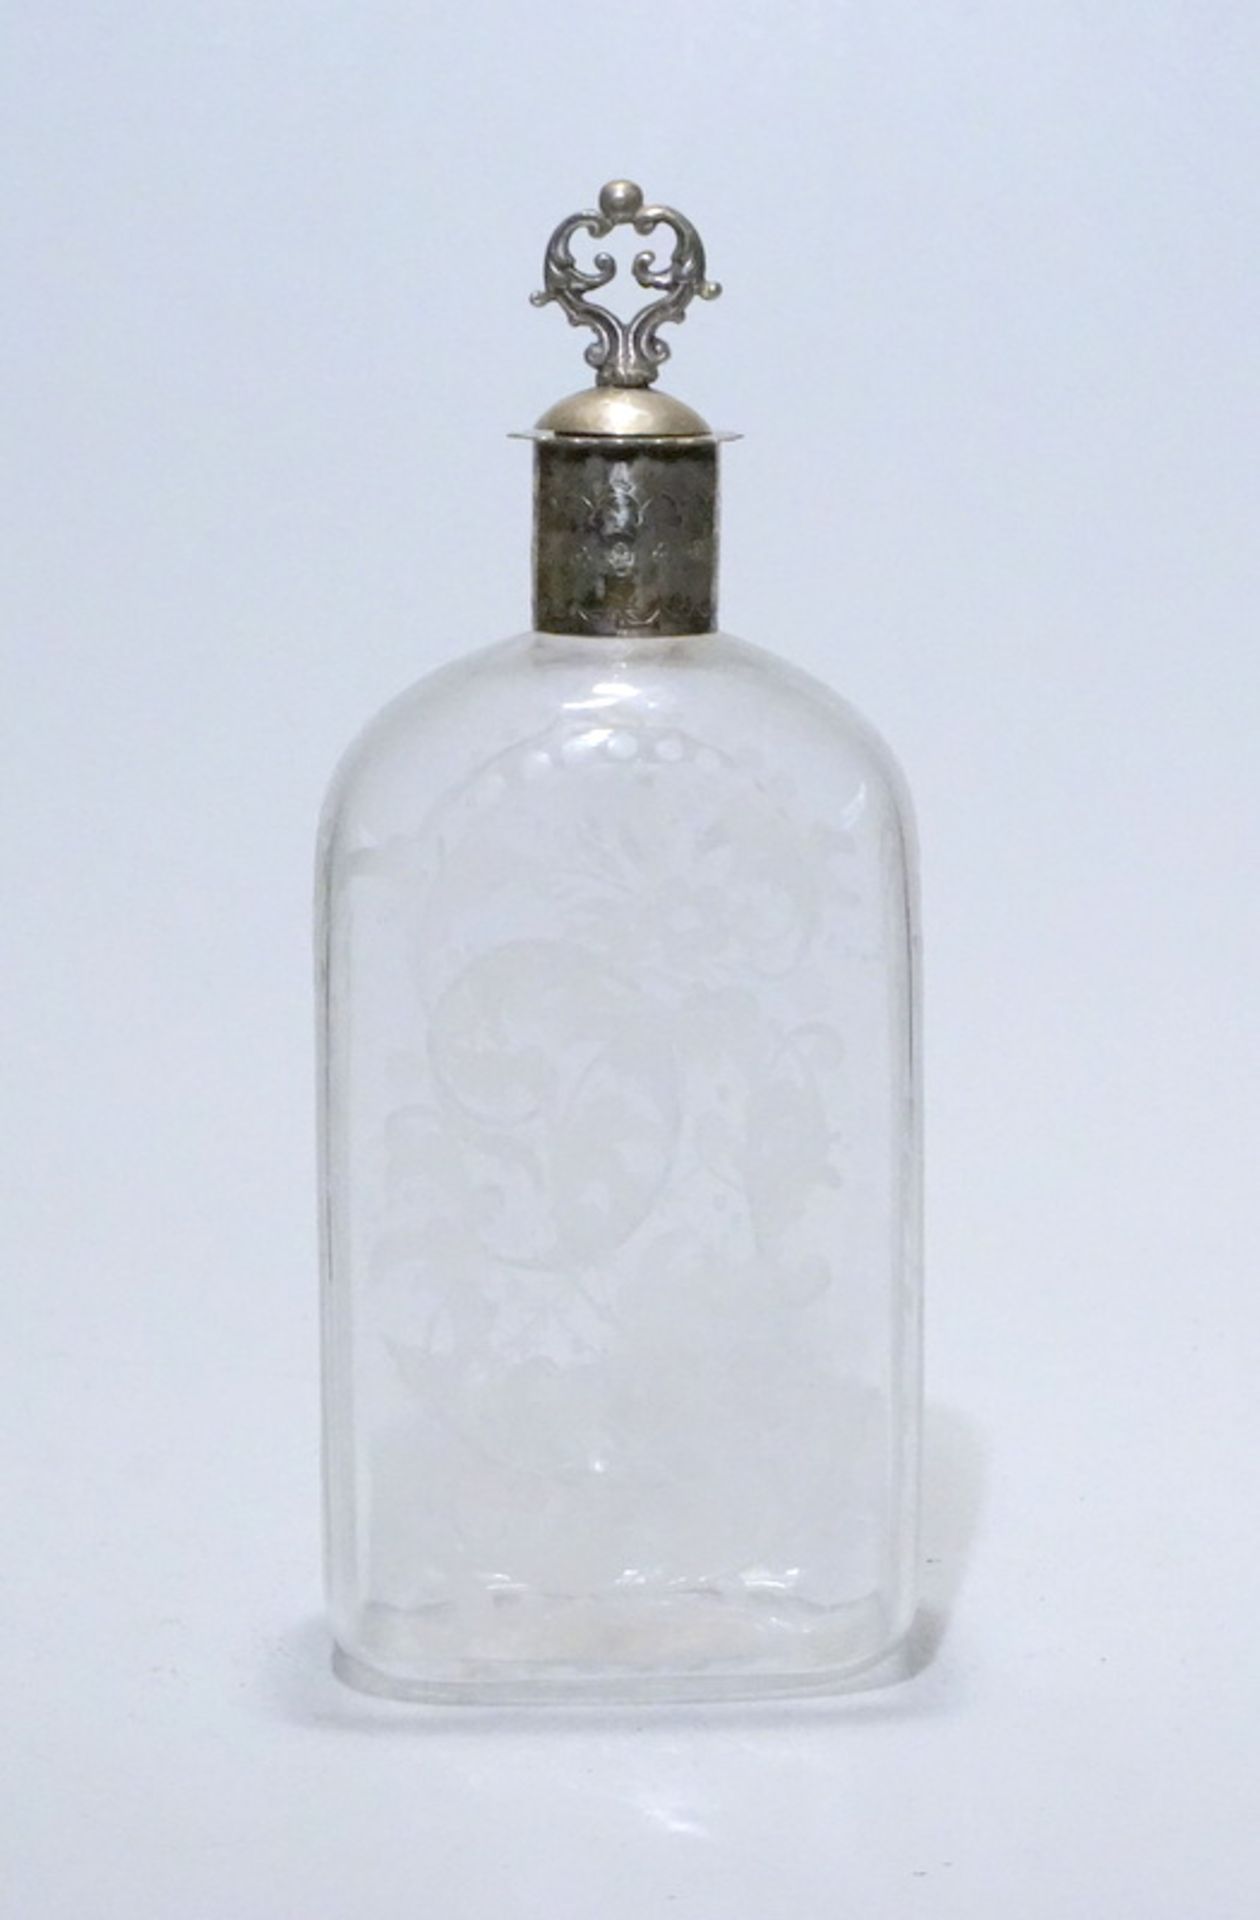 Süddeutsche Schnapsflasche mit Silbermontagenach altem Vorbild, lampengeblasen und matt graviert mit